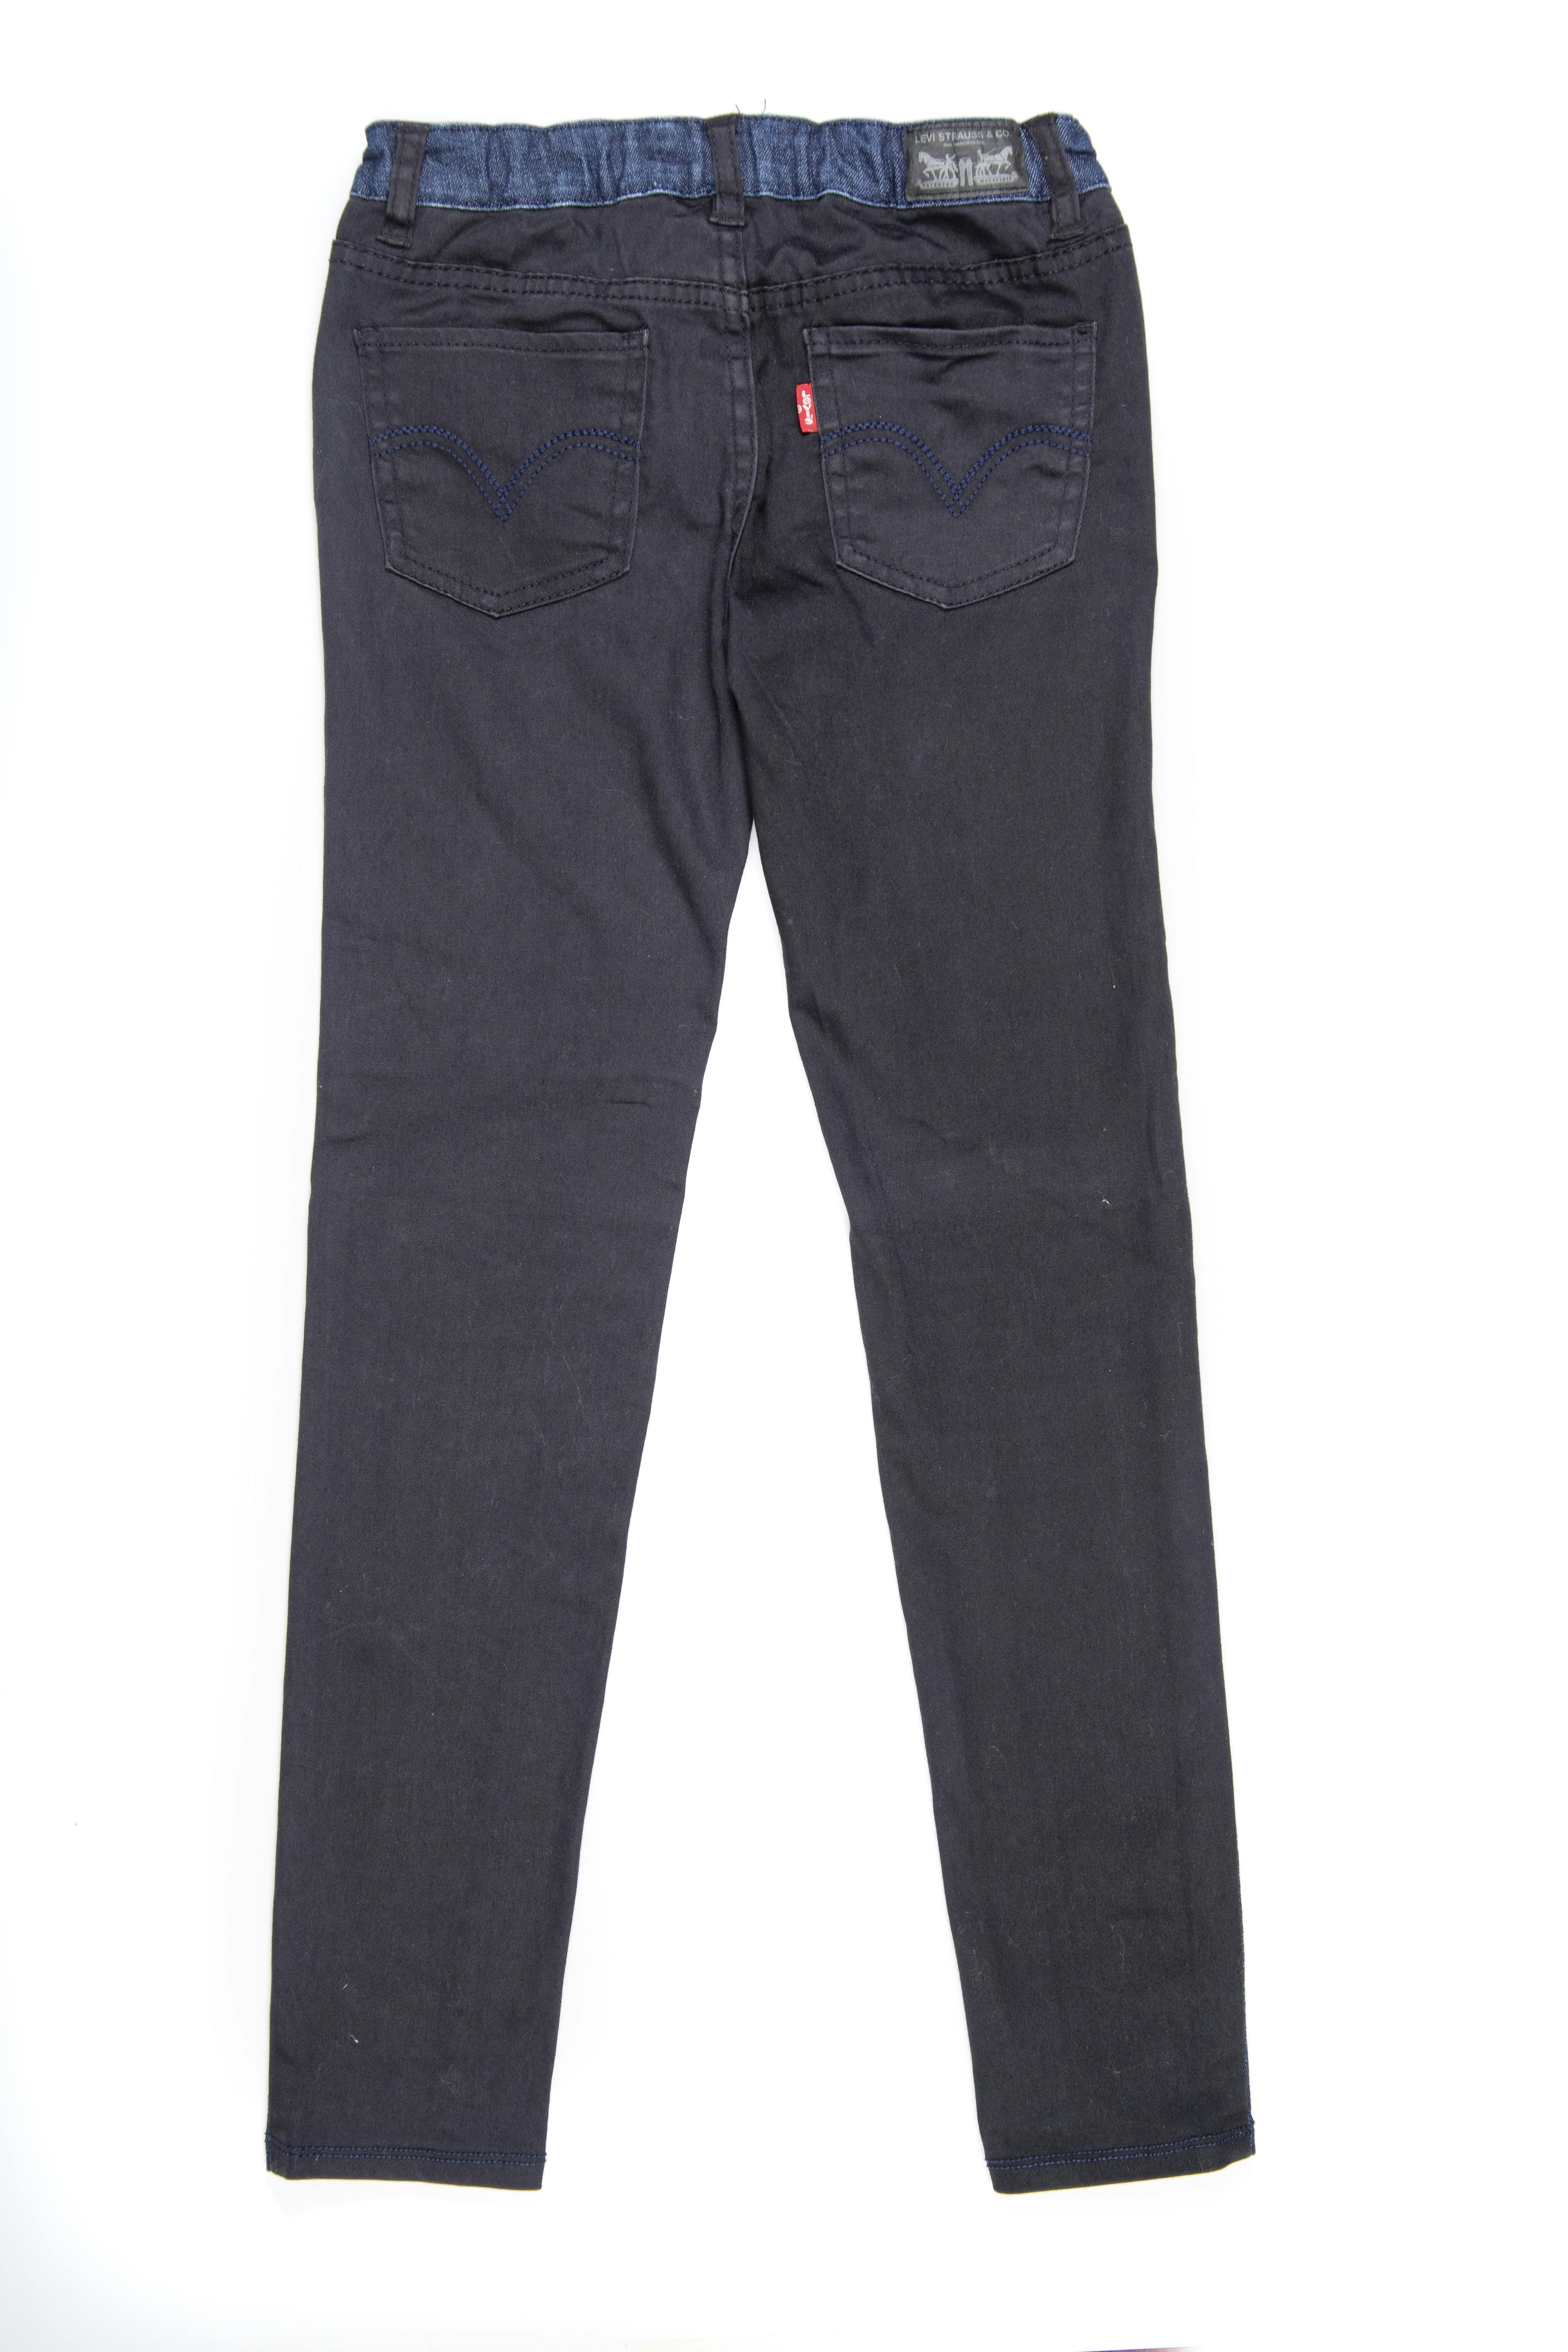 Pantalon jean azul por delante y negro por detrás. Cintura regulable. Stretch - Levis